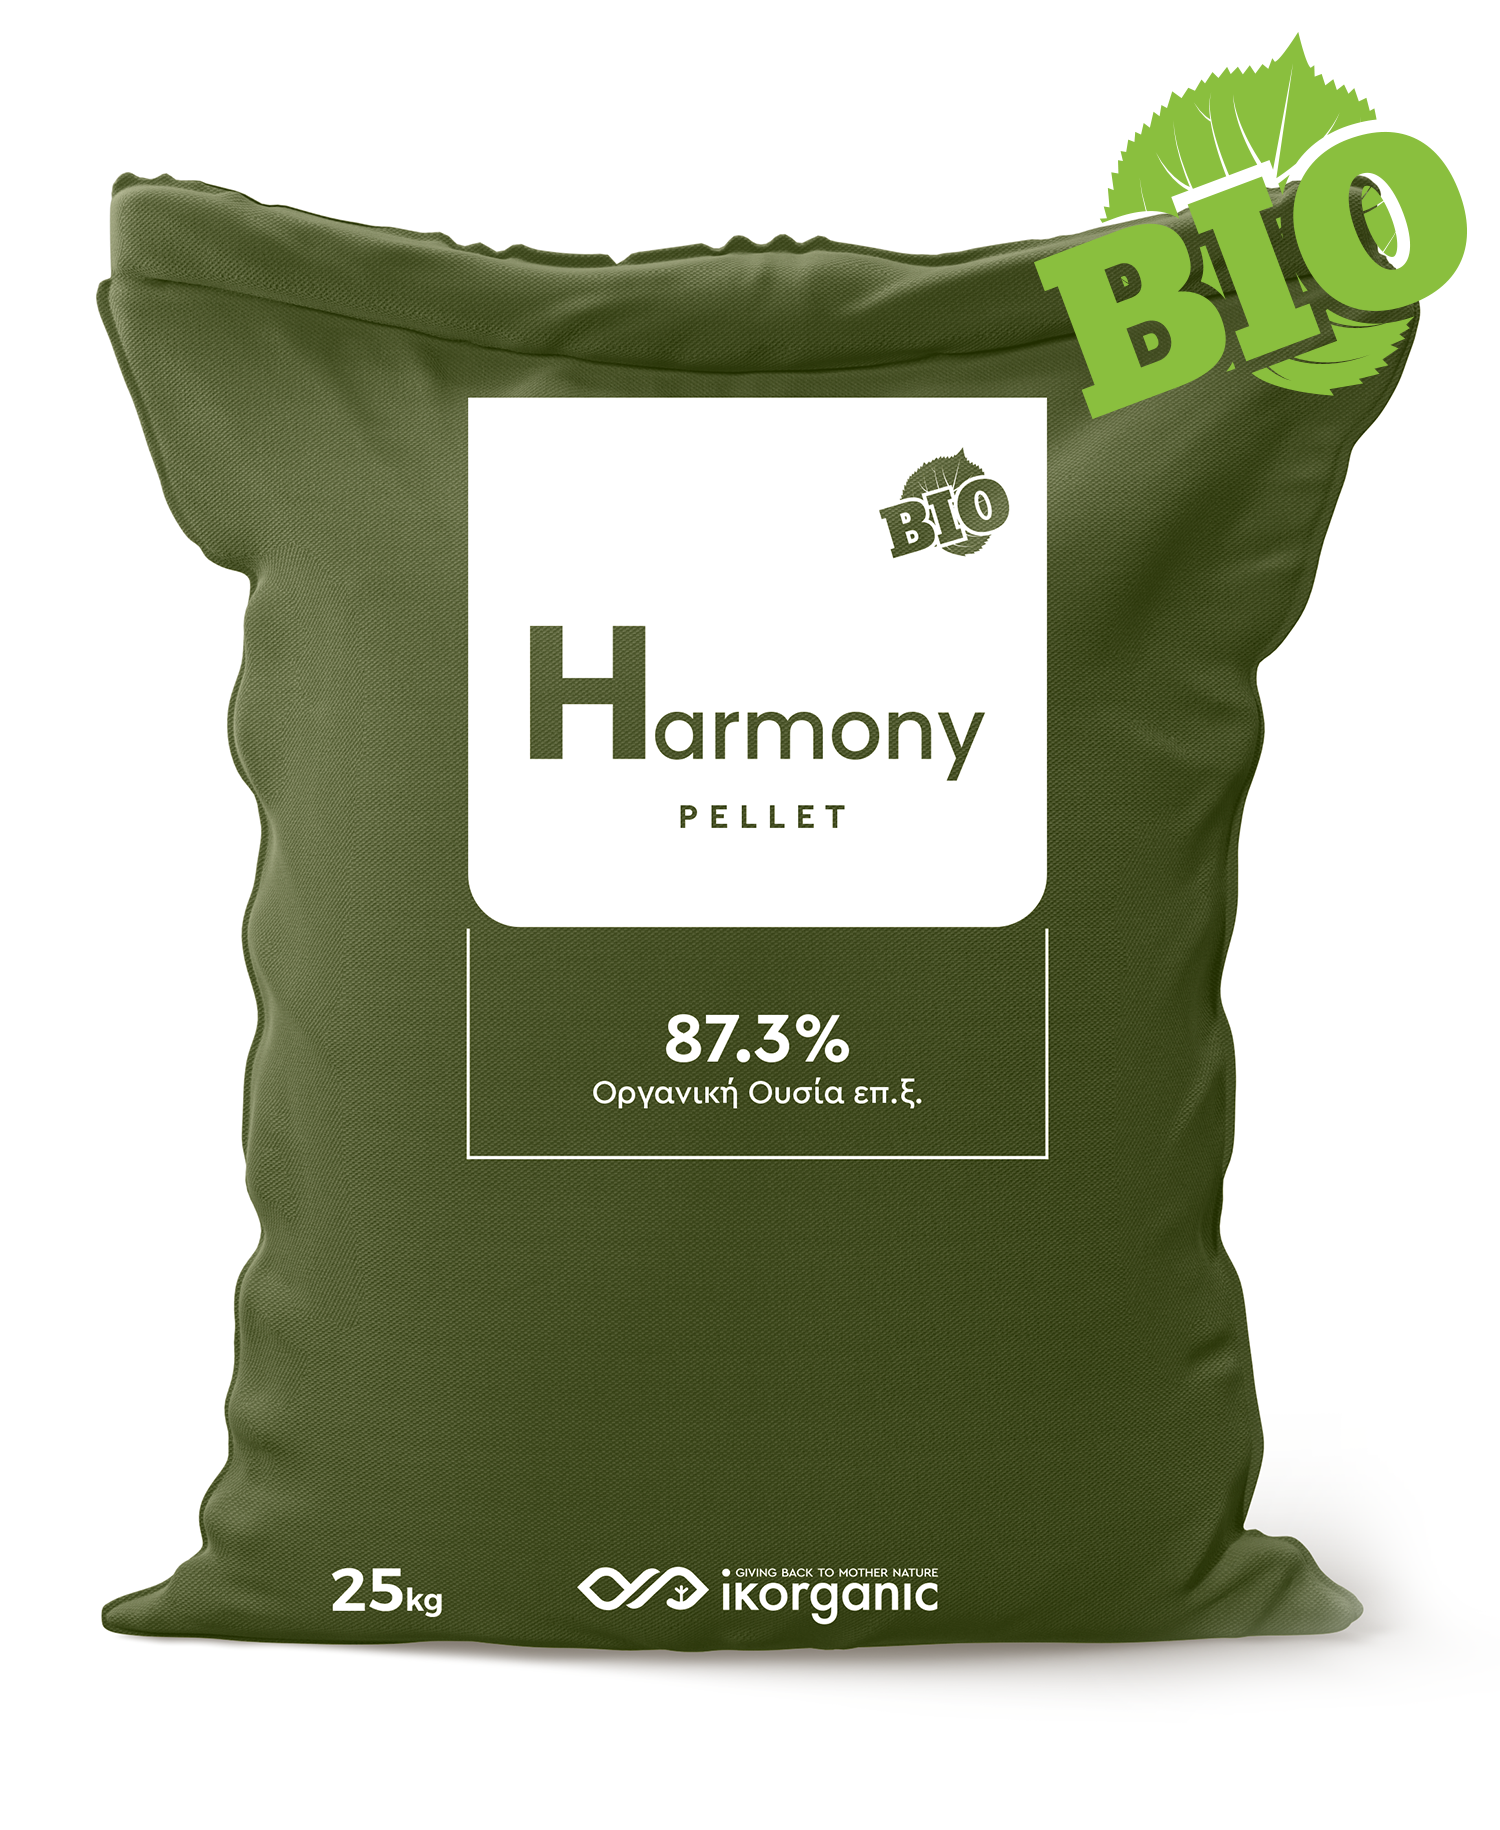 Harmony Pellet